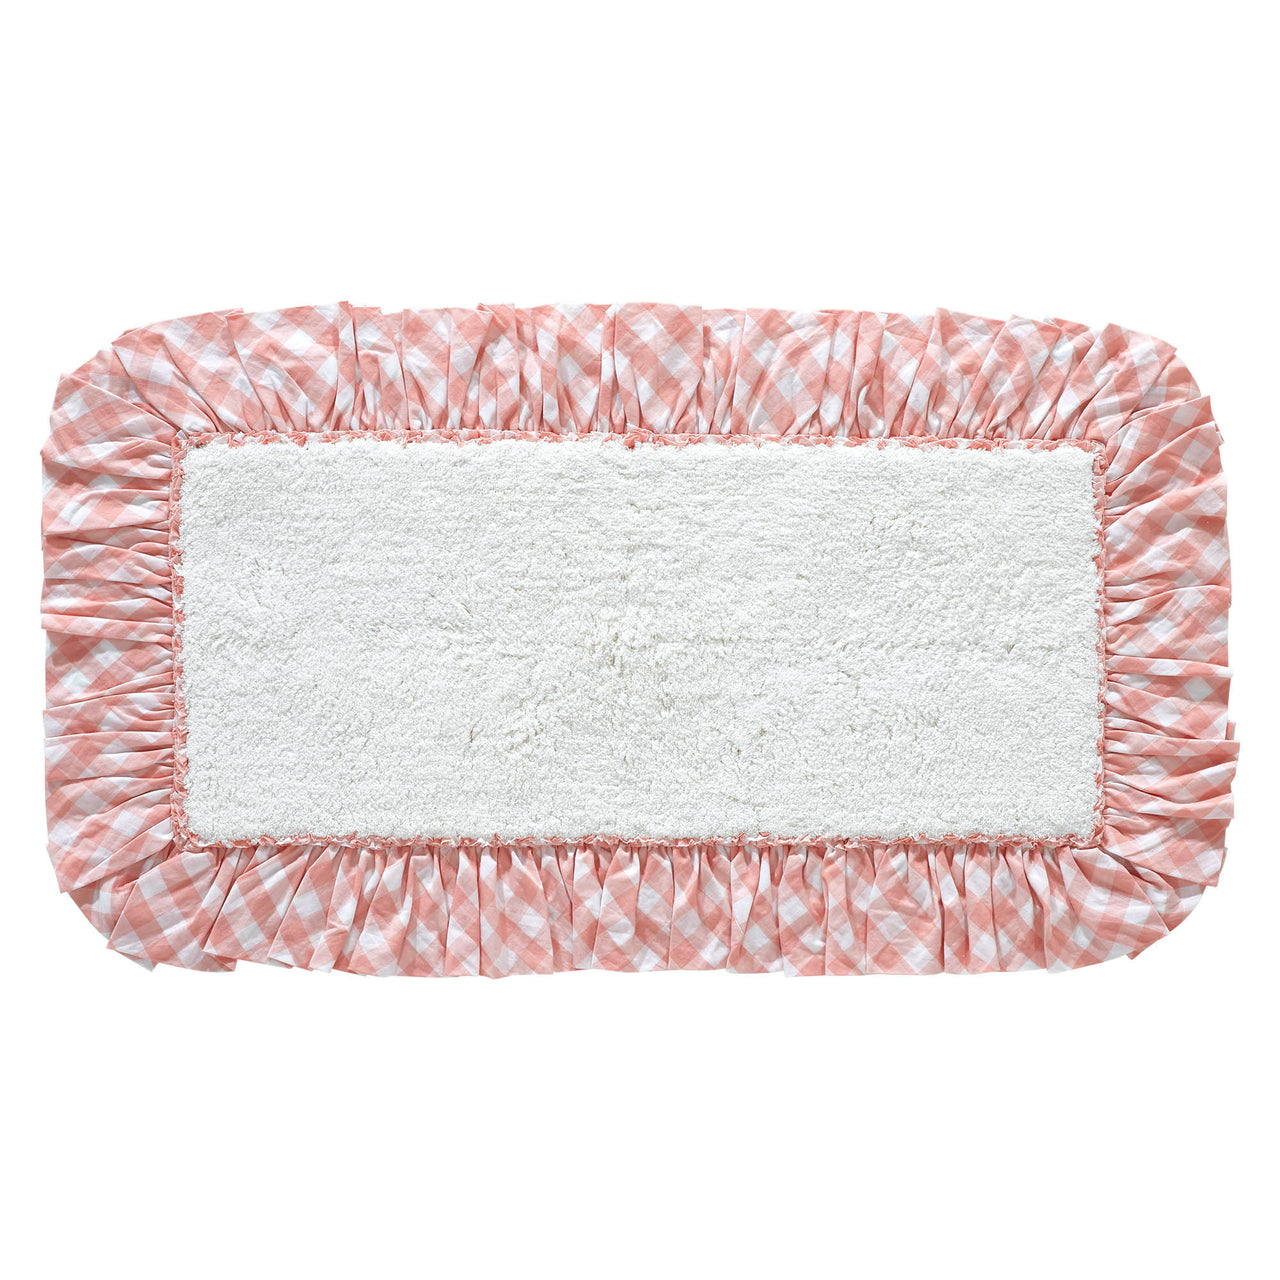 Annie Buffalo Coral Check Bathmat 27" x 48" VHC Brands